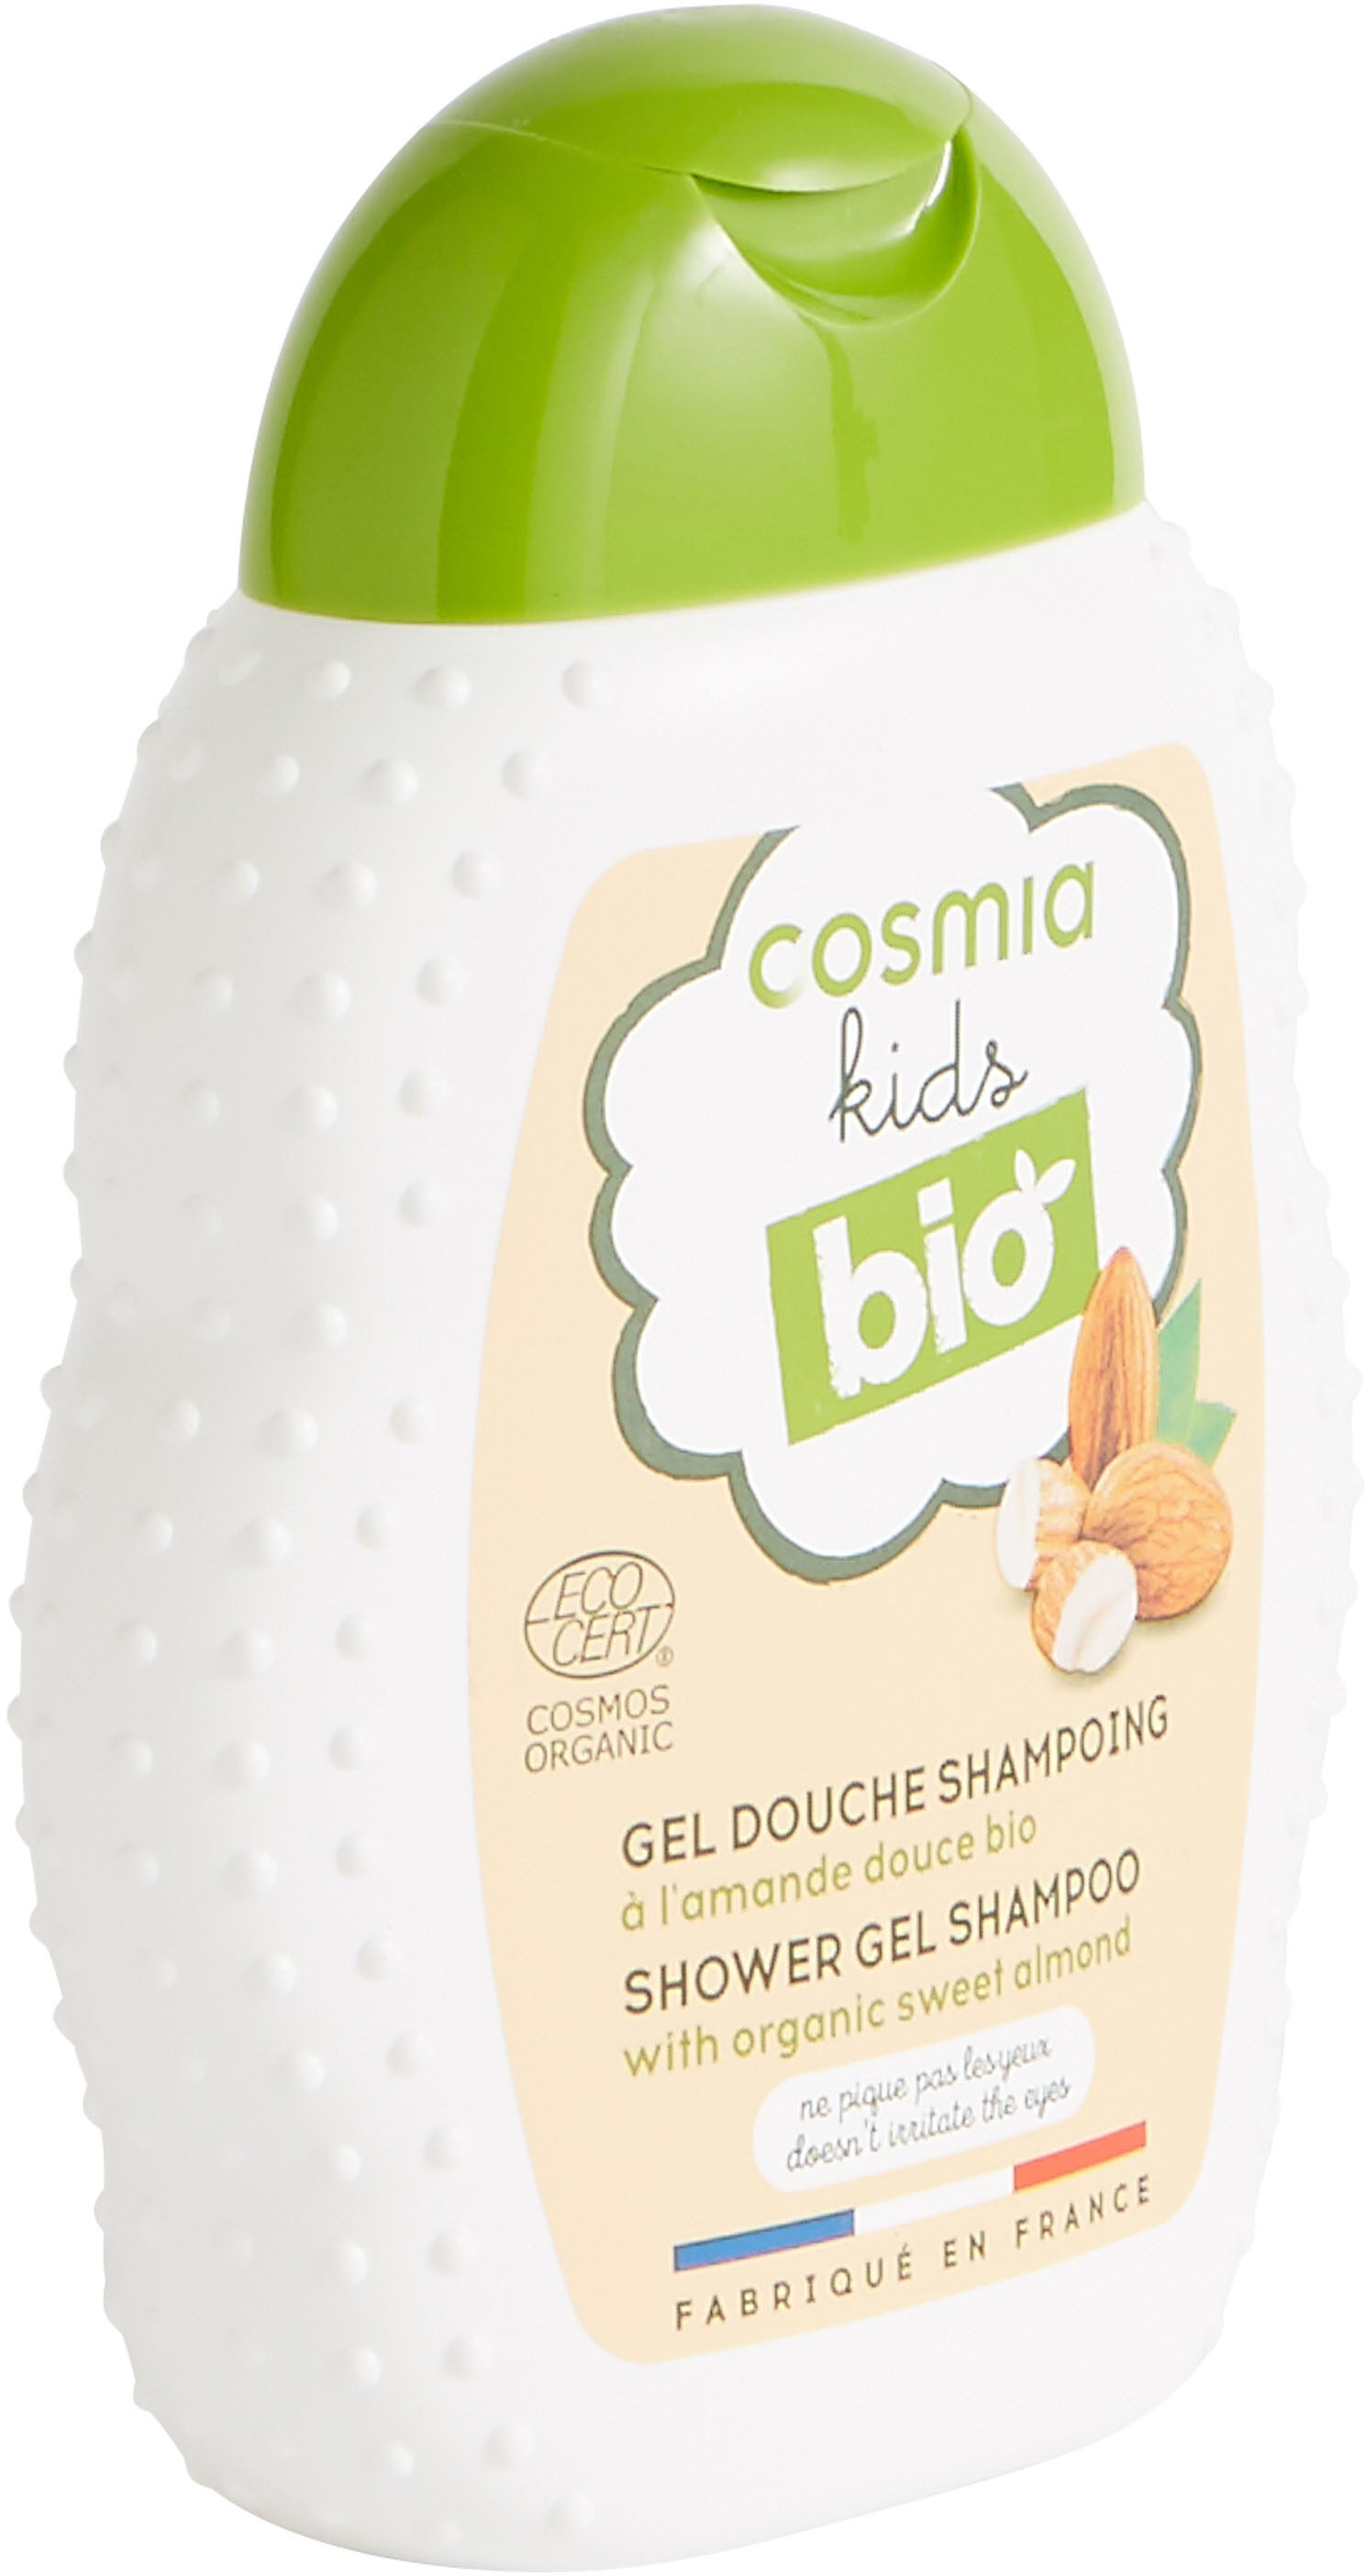 Gel douche shampooing à l'amande douce bio - Product - en